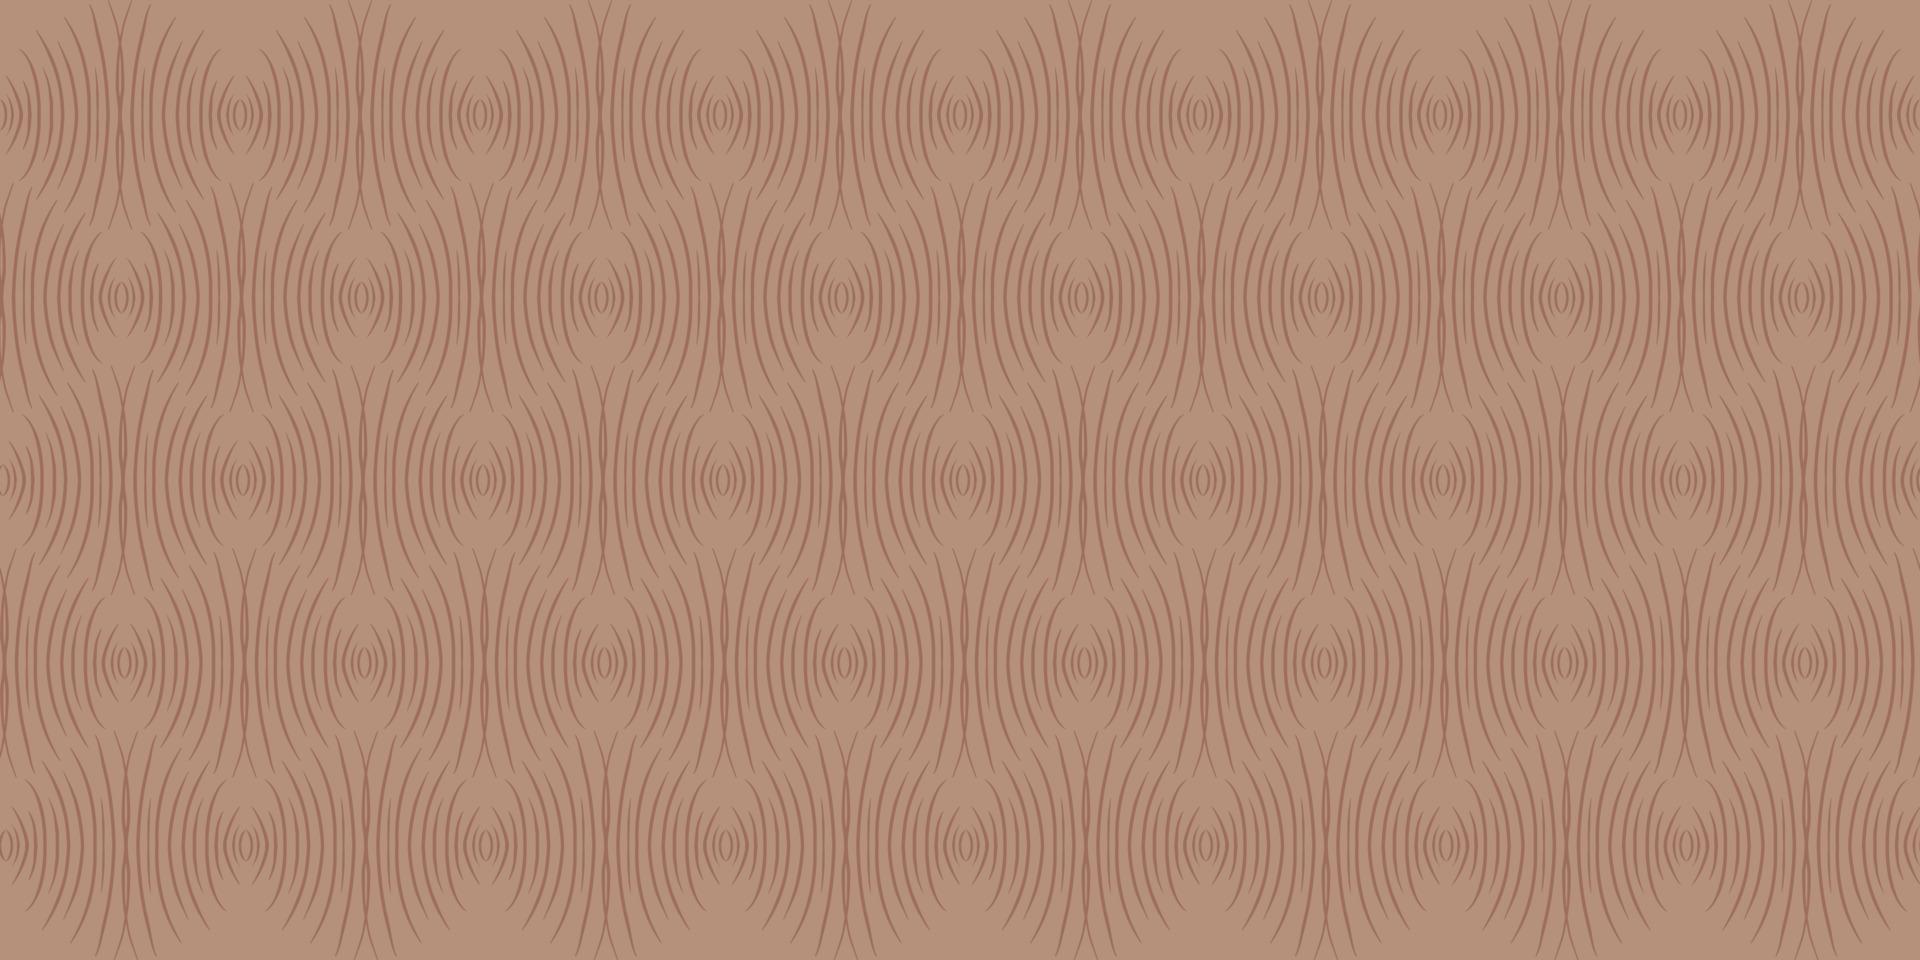 abstrakter rosa und beige hintergrund mit einer verzierung. geometrisches sich wiederholendes Muster. vektor